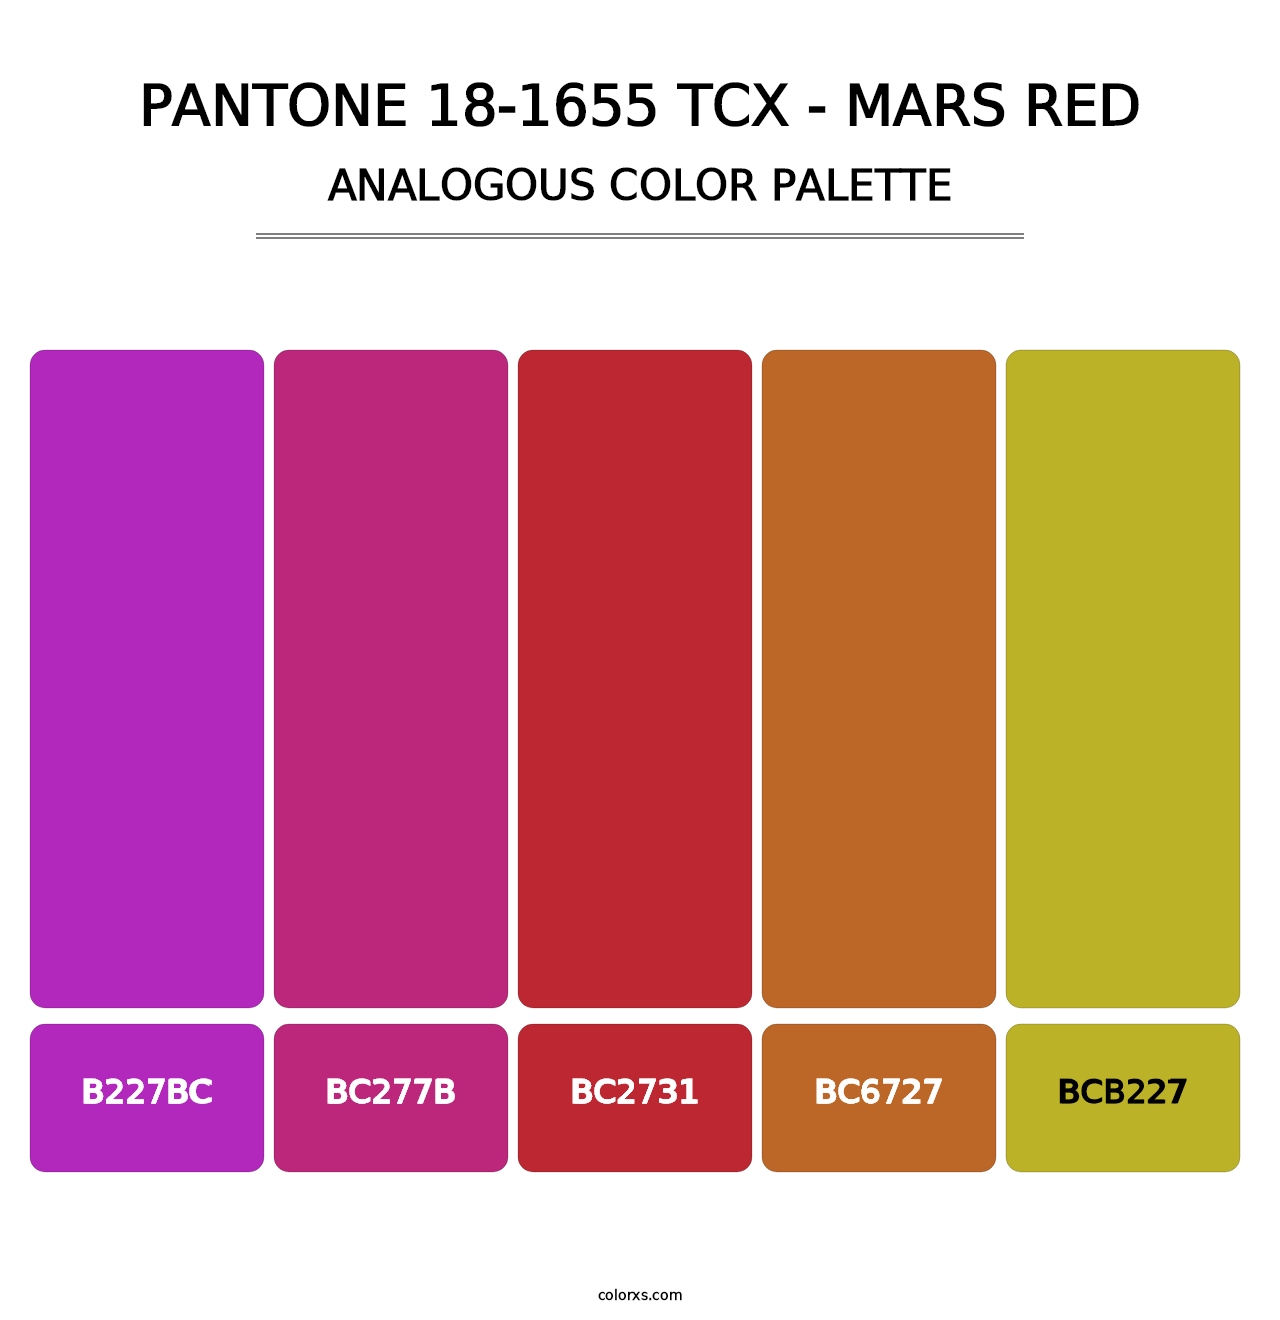 PANTONE 18-1655 TCX - Mars Red - Analogous Color Palette